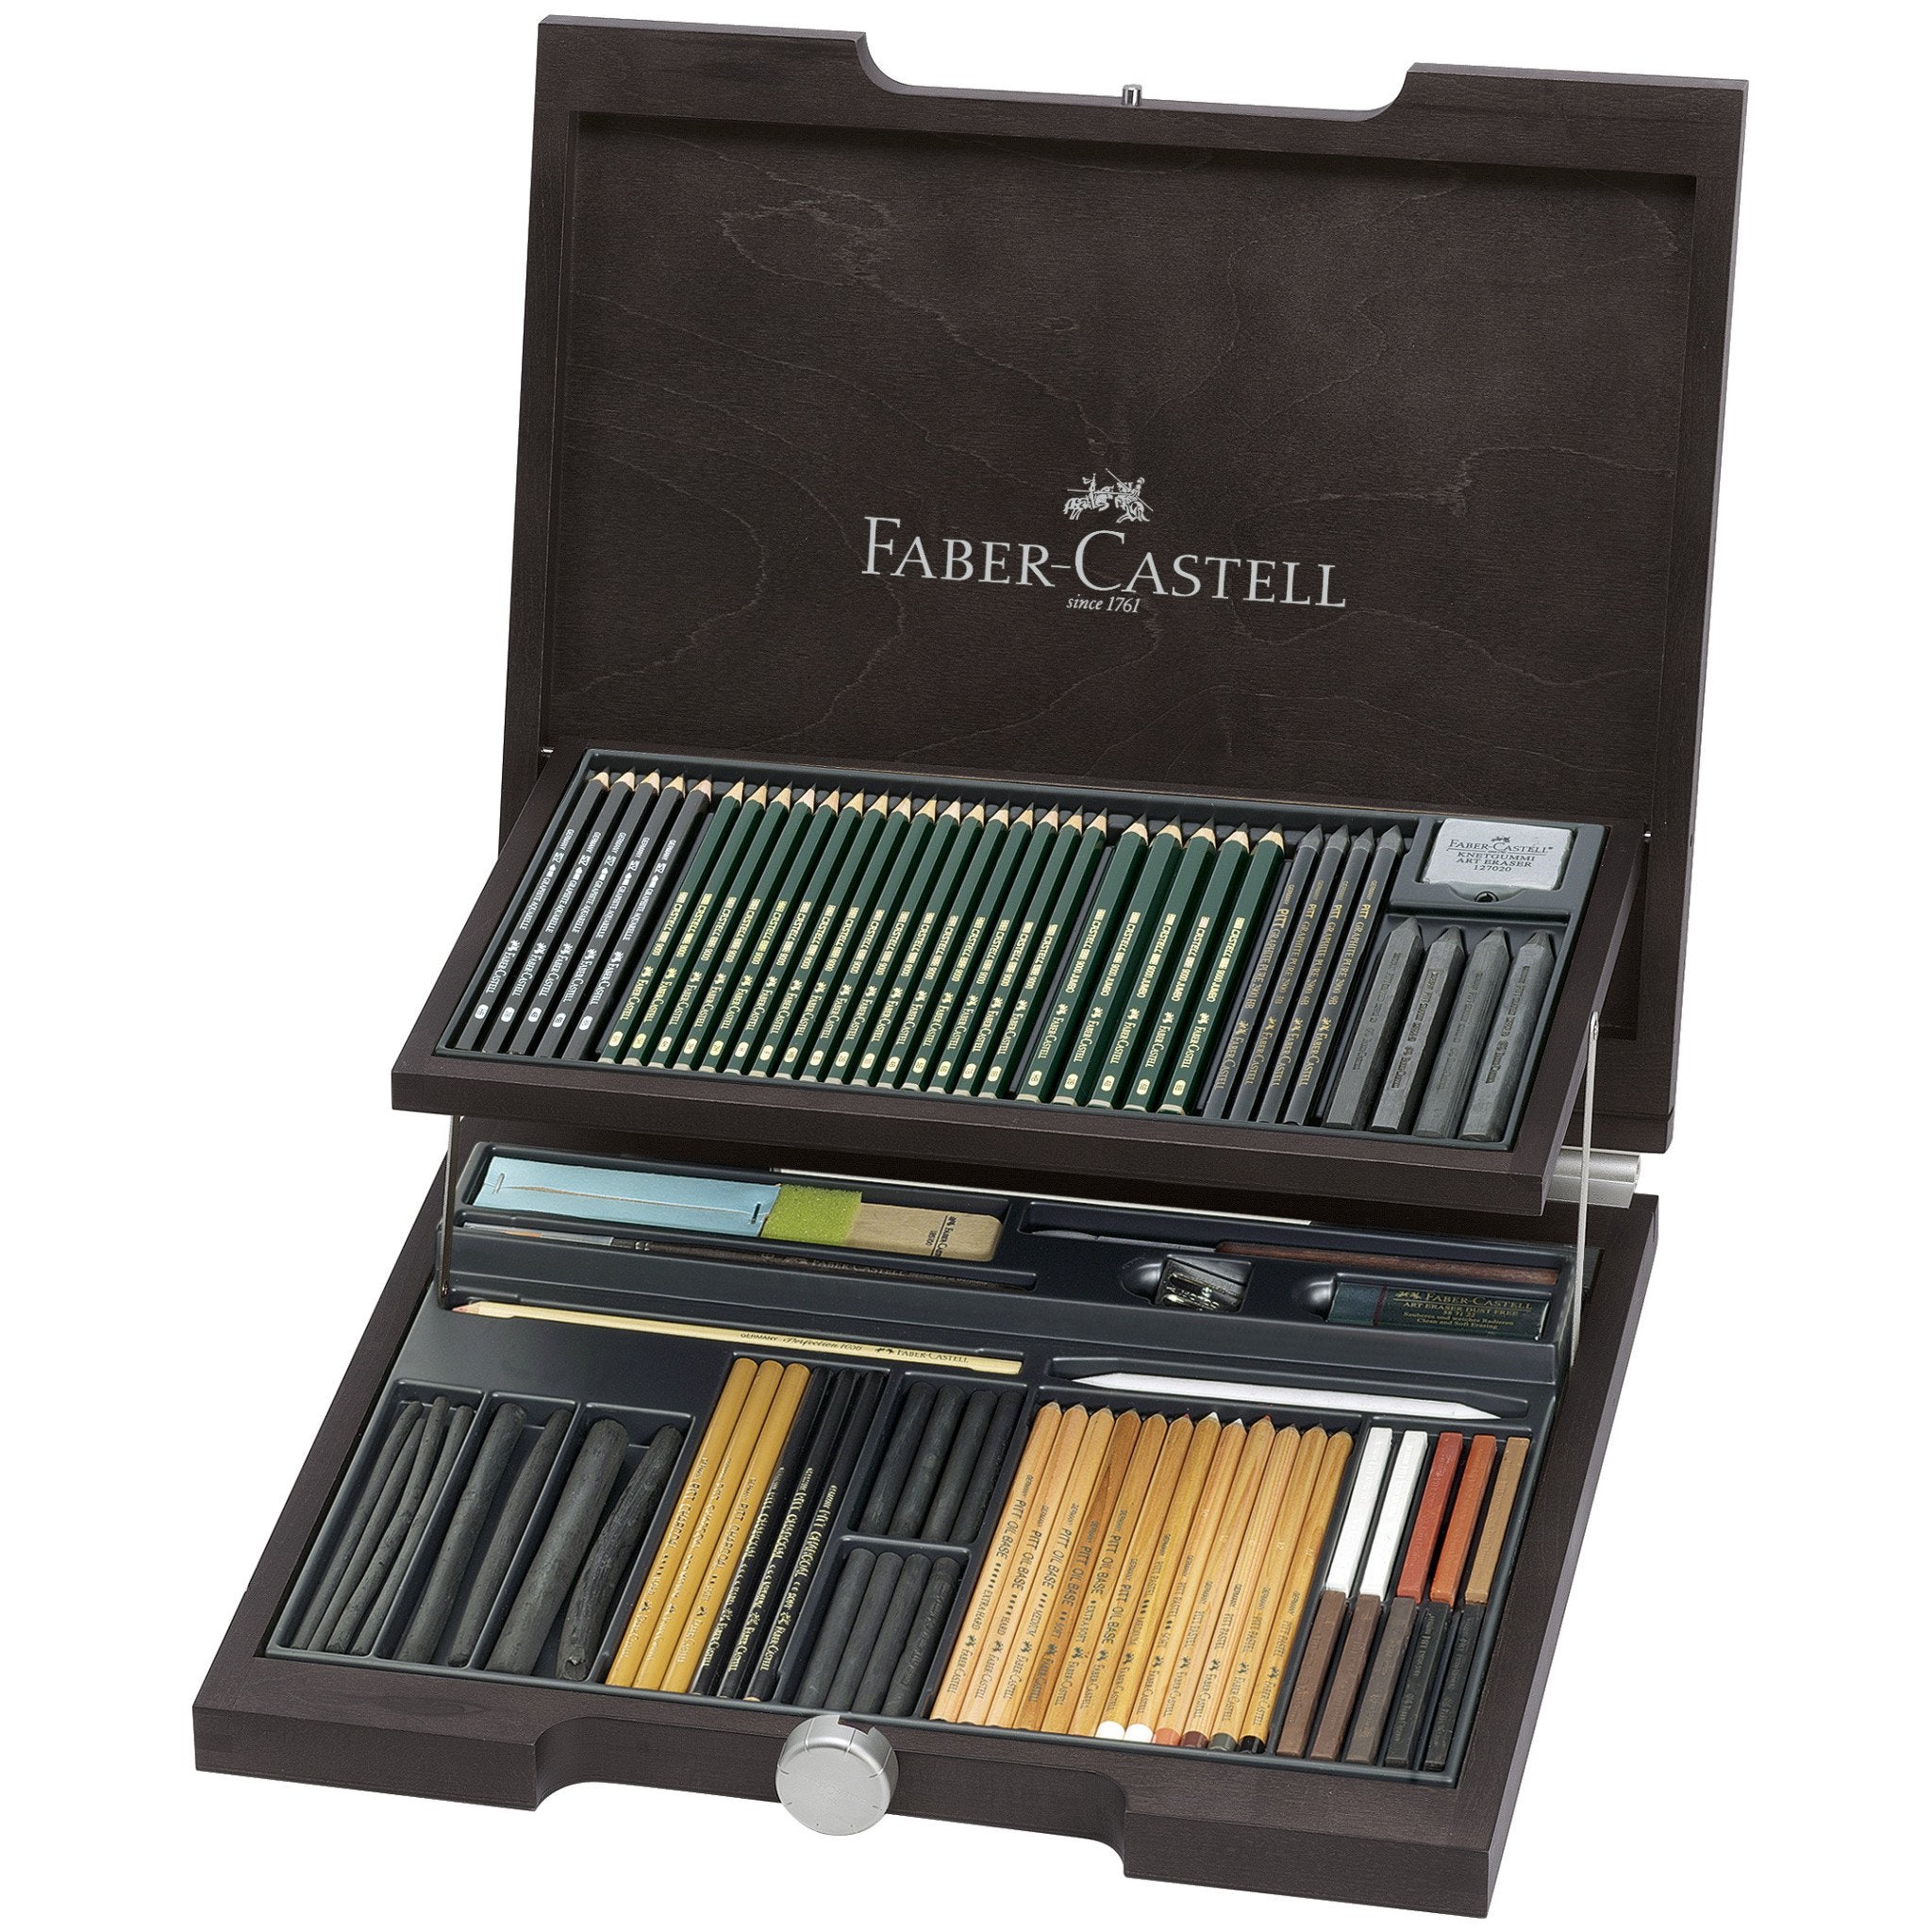 Faber-castell Pencils, Castell 9000 Art Graphite Pencils Set, Pitt